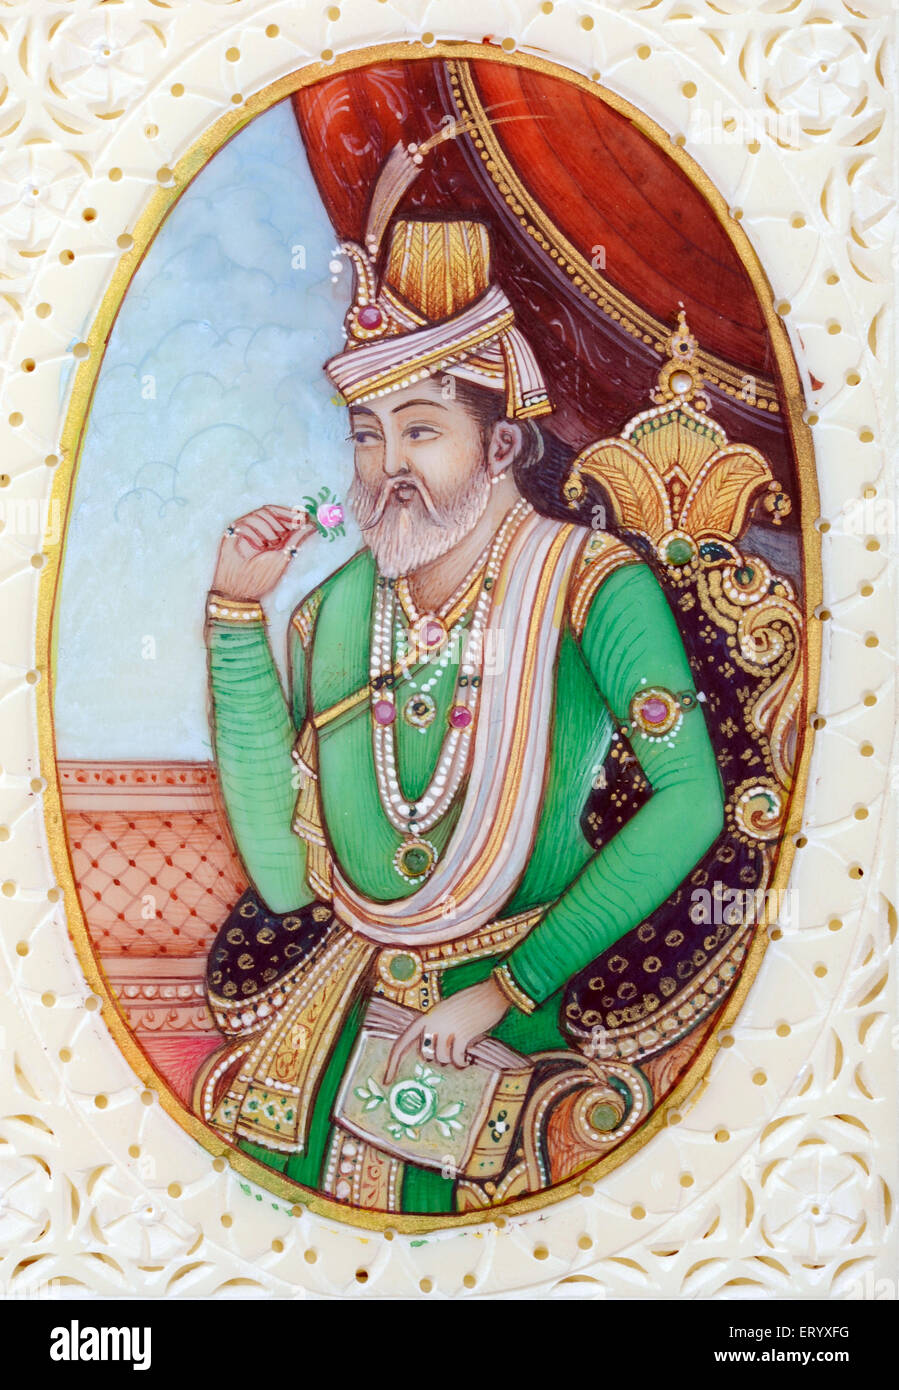 Pintura en miniatura del emperador Mughal humayun Foto de stock